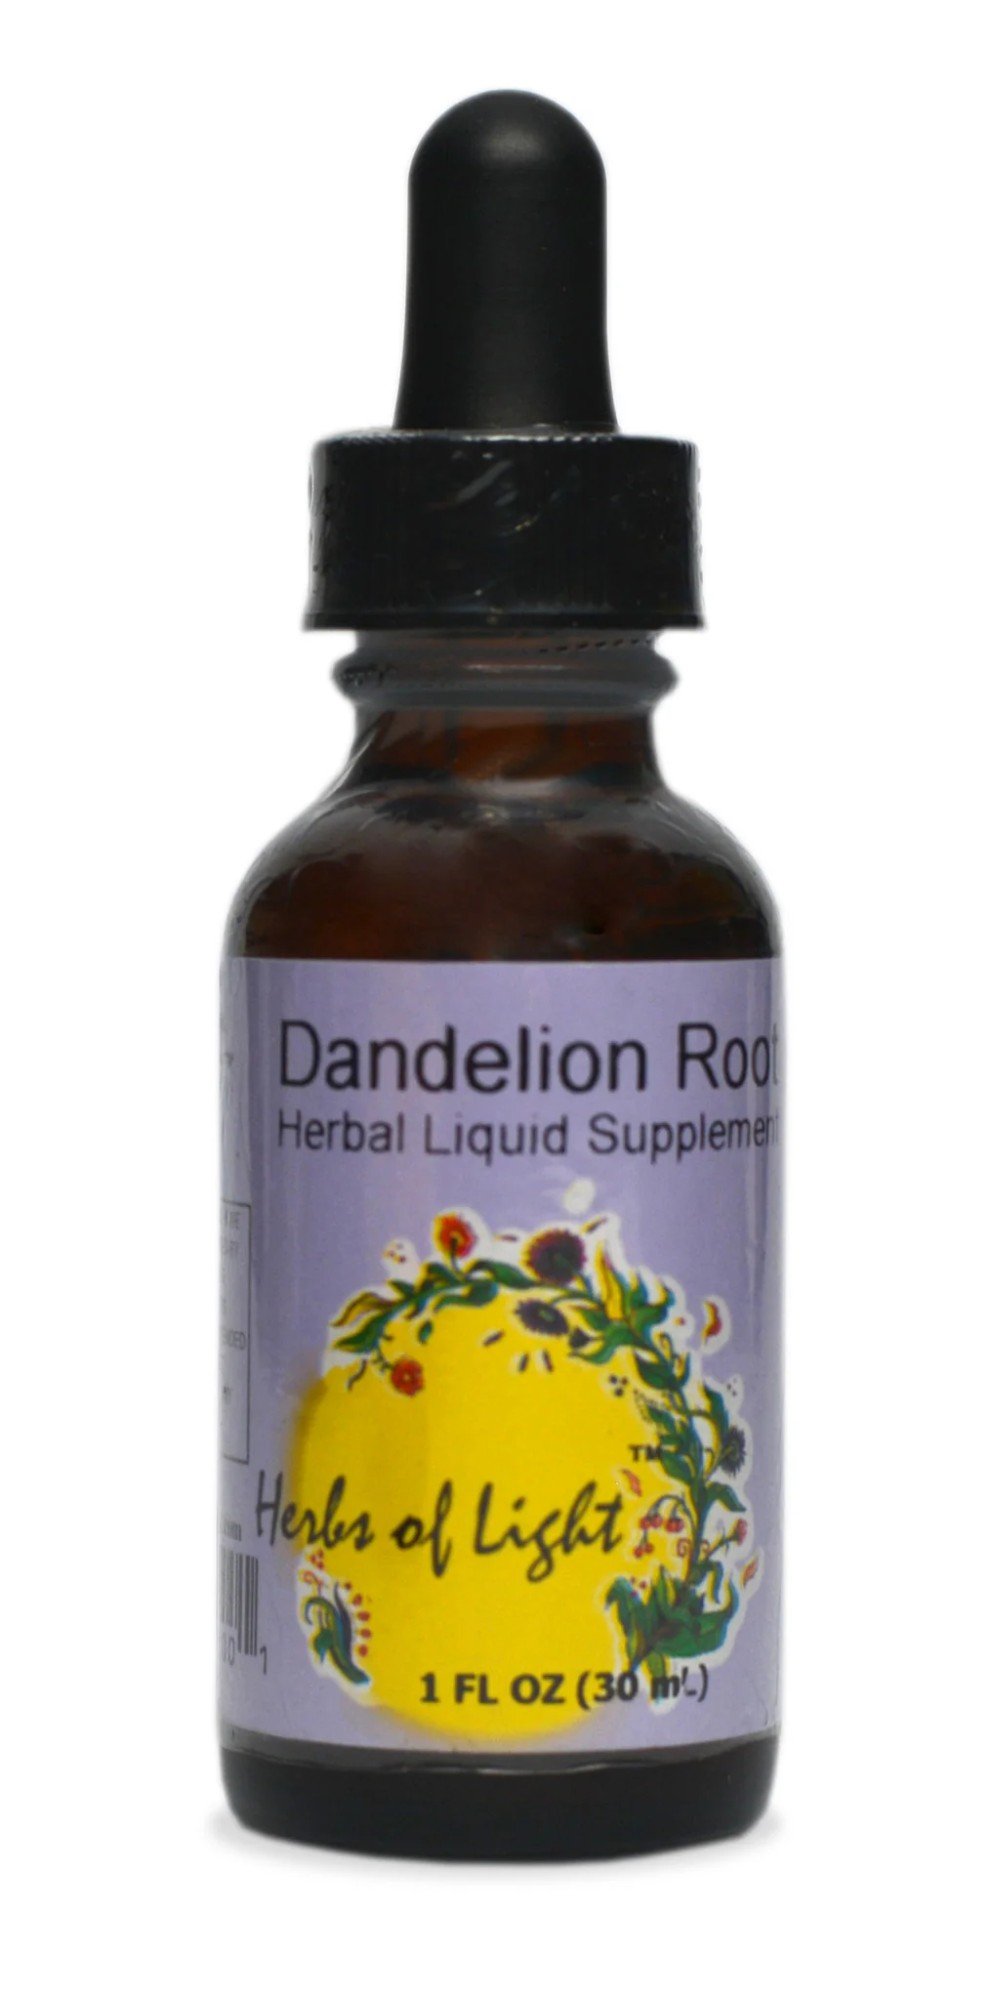 Herbs of Light Dandelion Root 1 oz Liquid